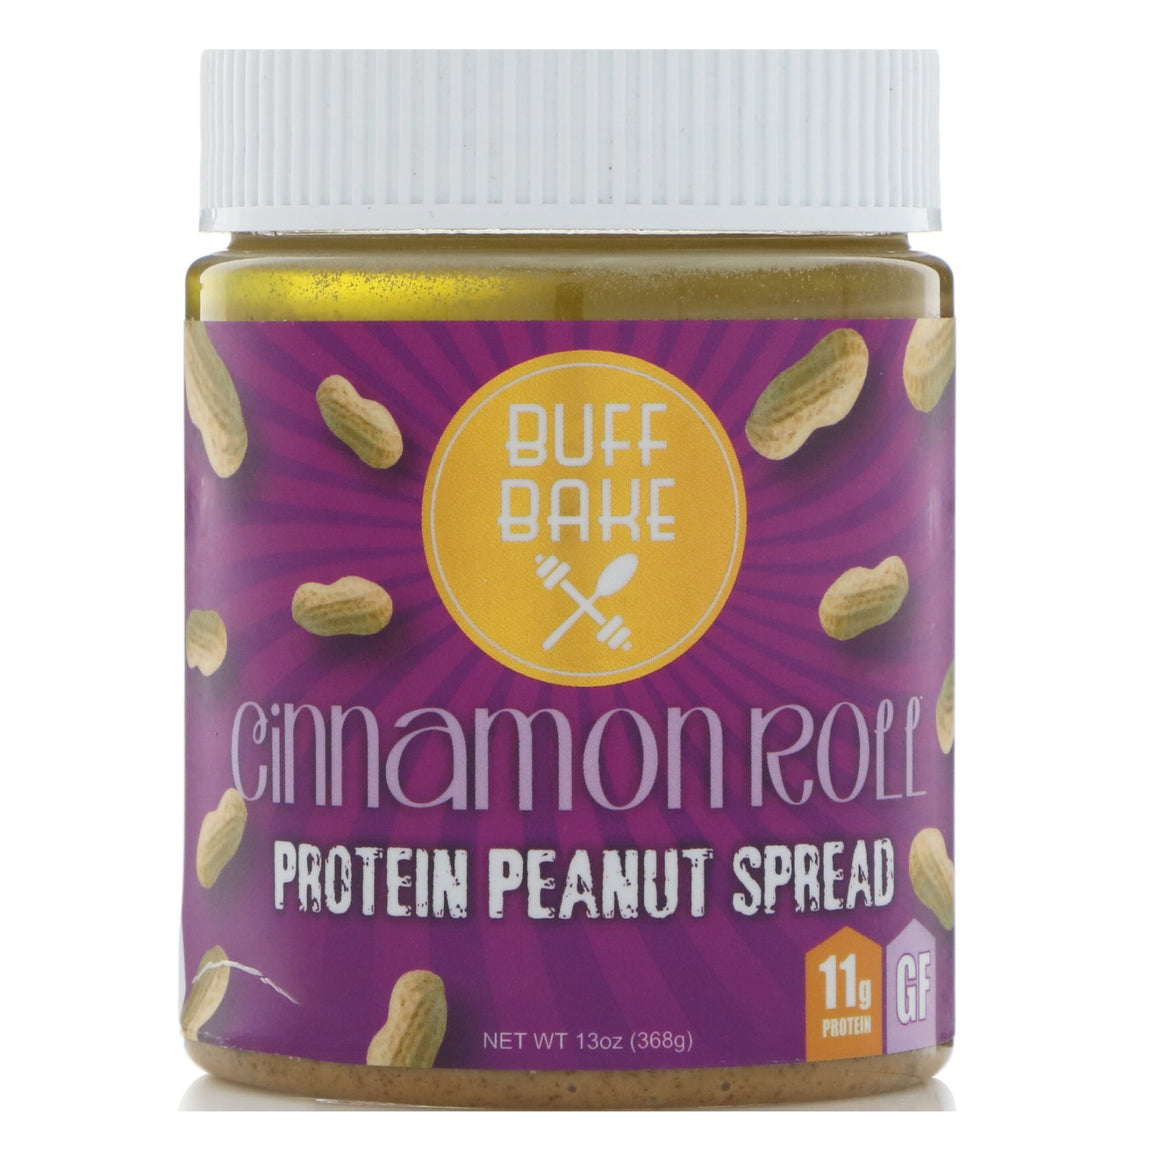 Buff Bake Protein Peanut Spread - 368g